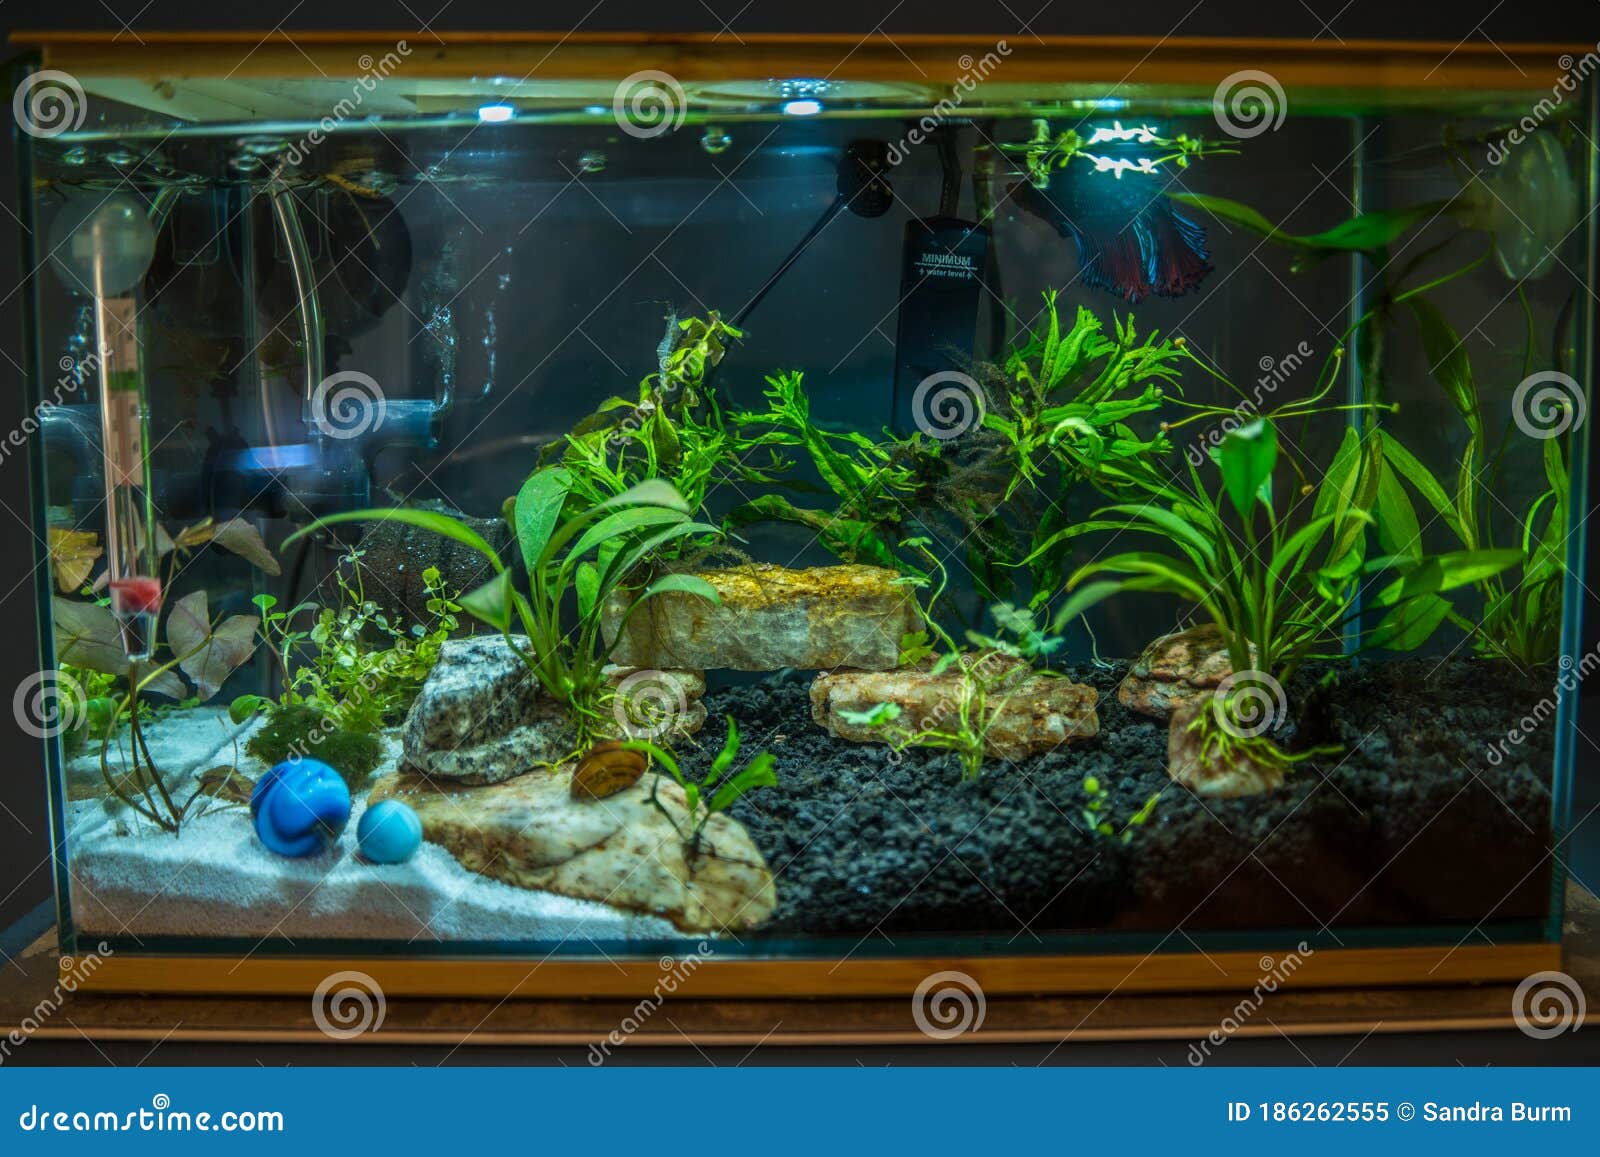 betta fish tank rocks